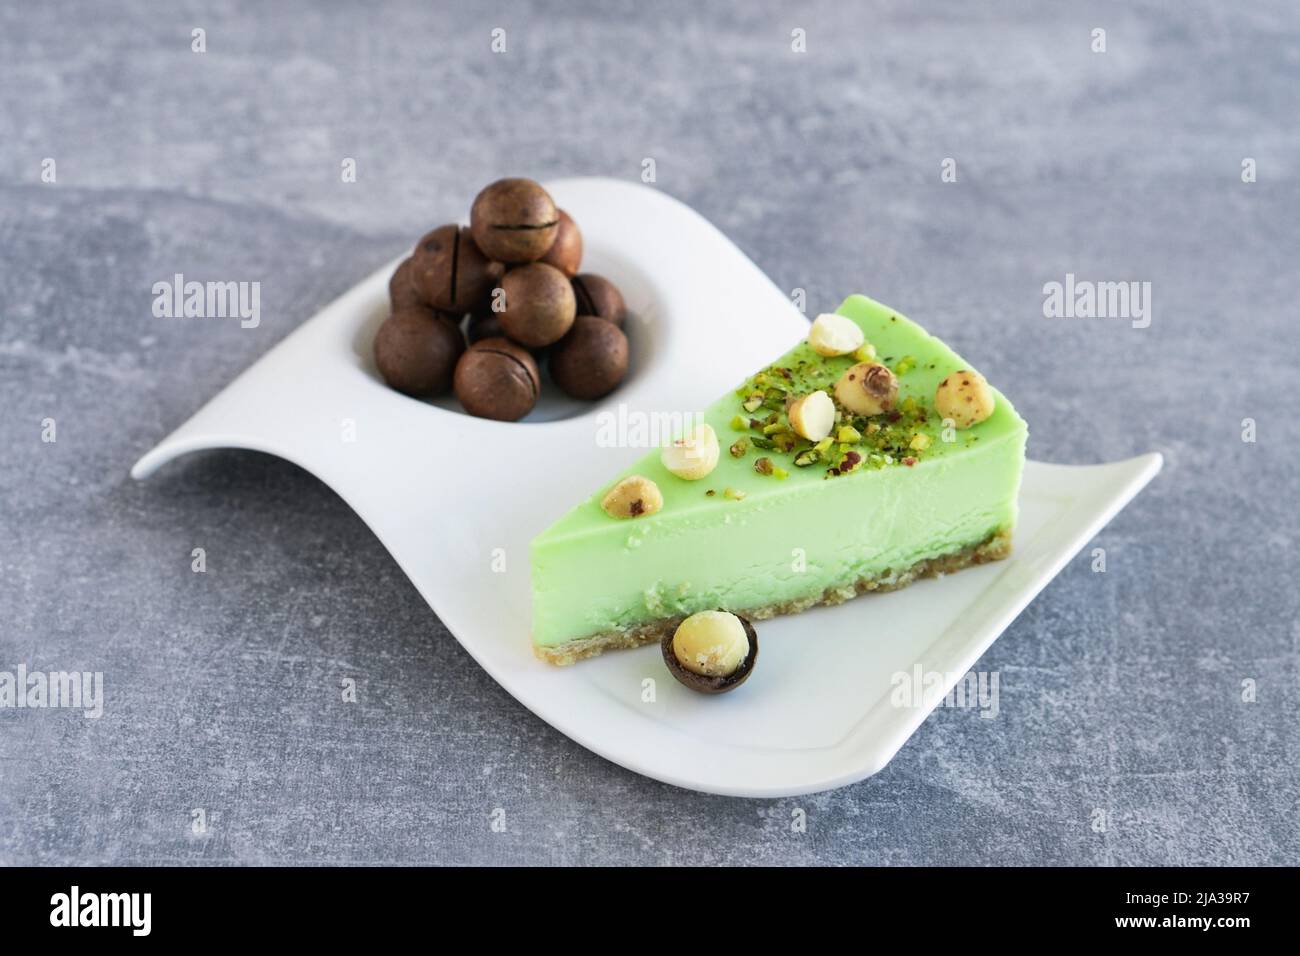 Gâteau vert à la pistache avec noix de macadamia sur plaque blanche sur table en béton gris. Cheesecake crémeux à la pistache Banque D'Images